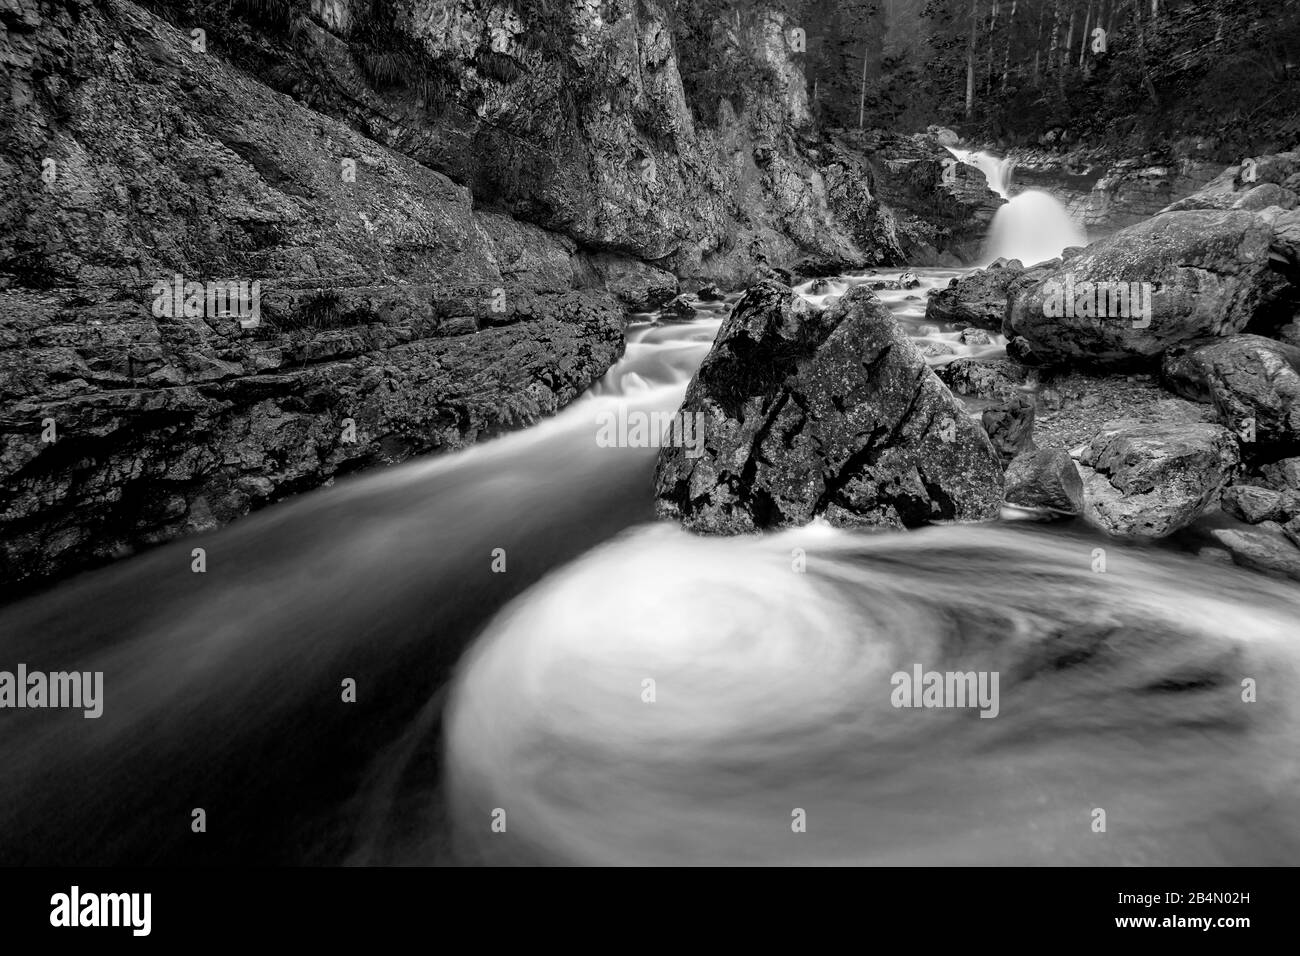 Le débit d'eau forme un gyroscope dans le lit du ruisseau du Kuchflucht près de Garmisch-Partenkirchen Banque D'Images